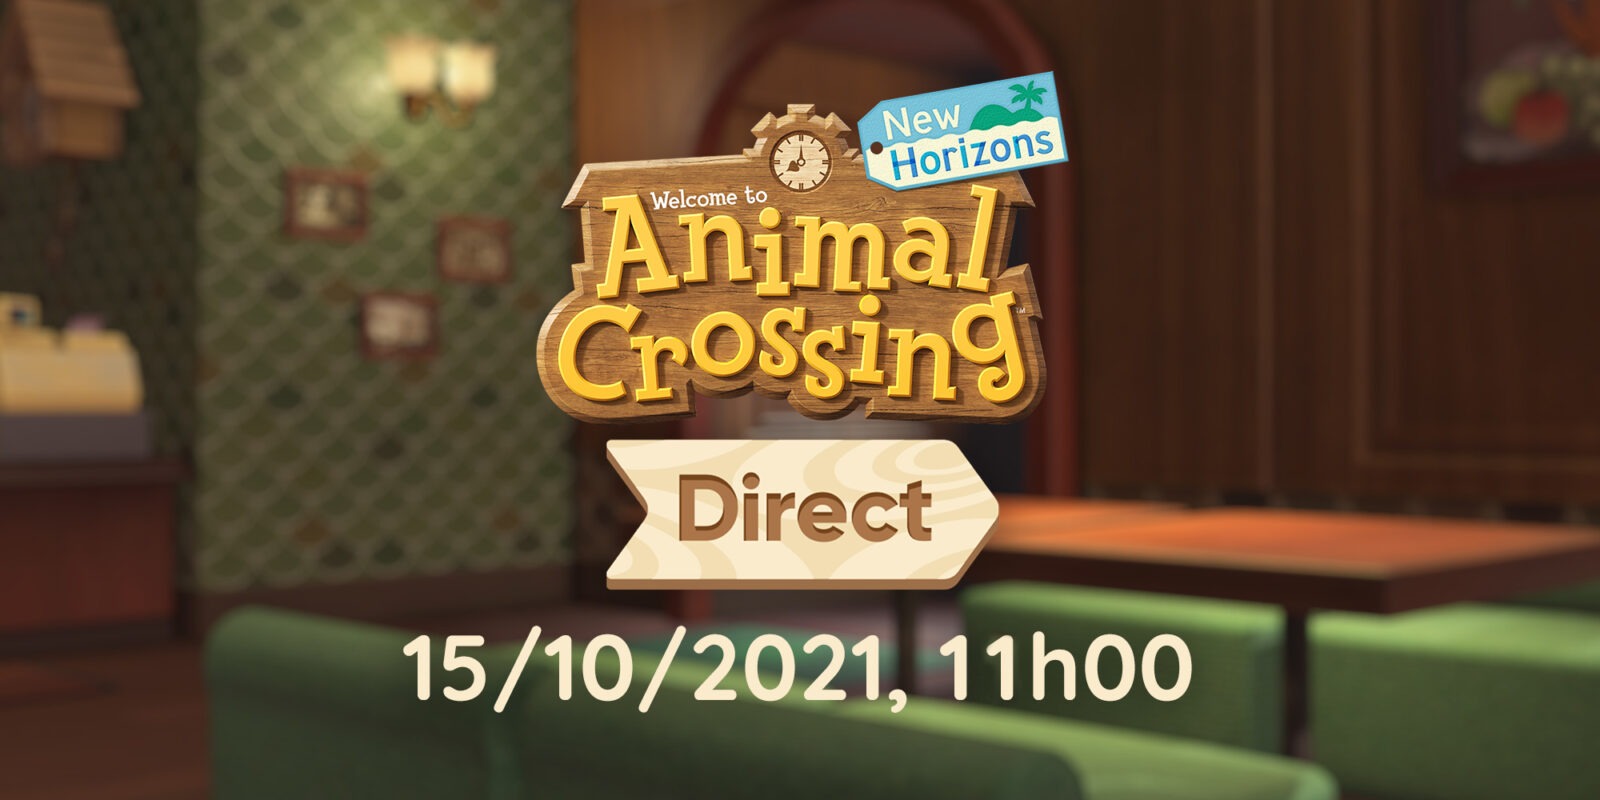 Direct de Animal Crossing: New Horizons acontece em 15 de outubro